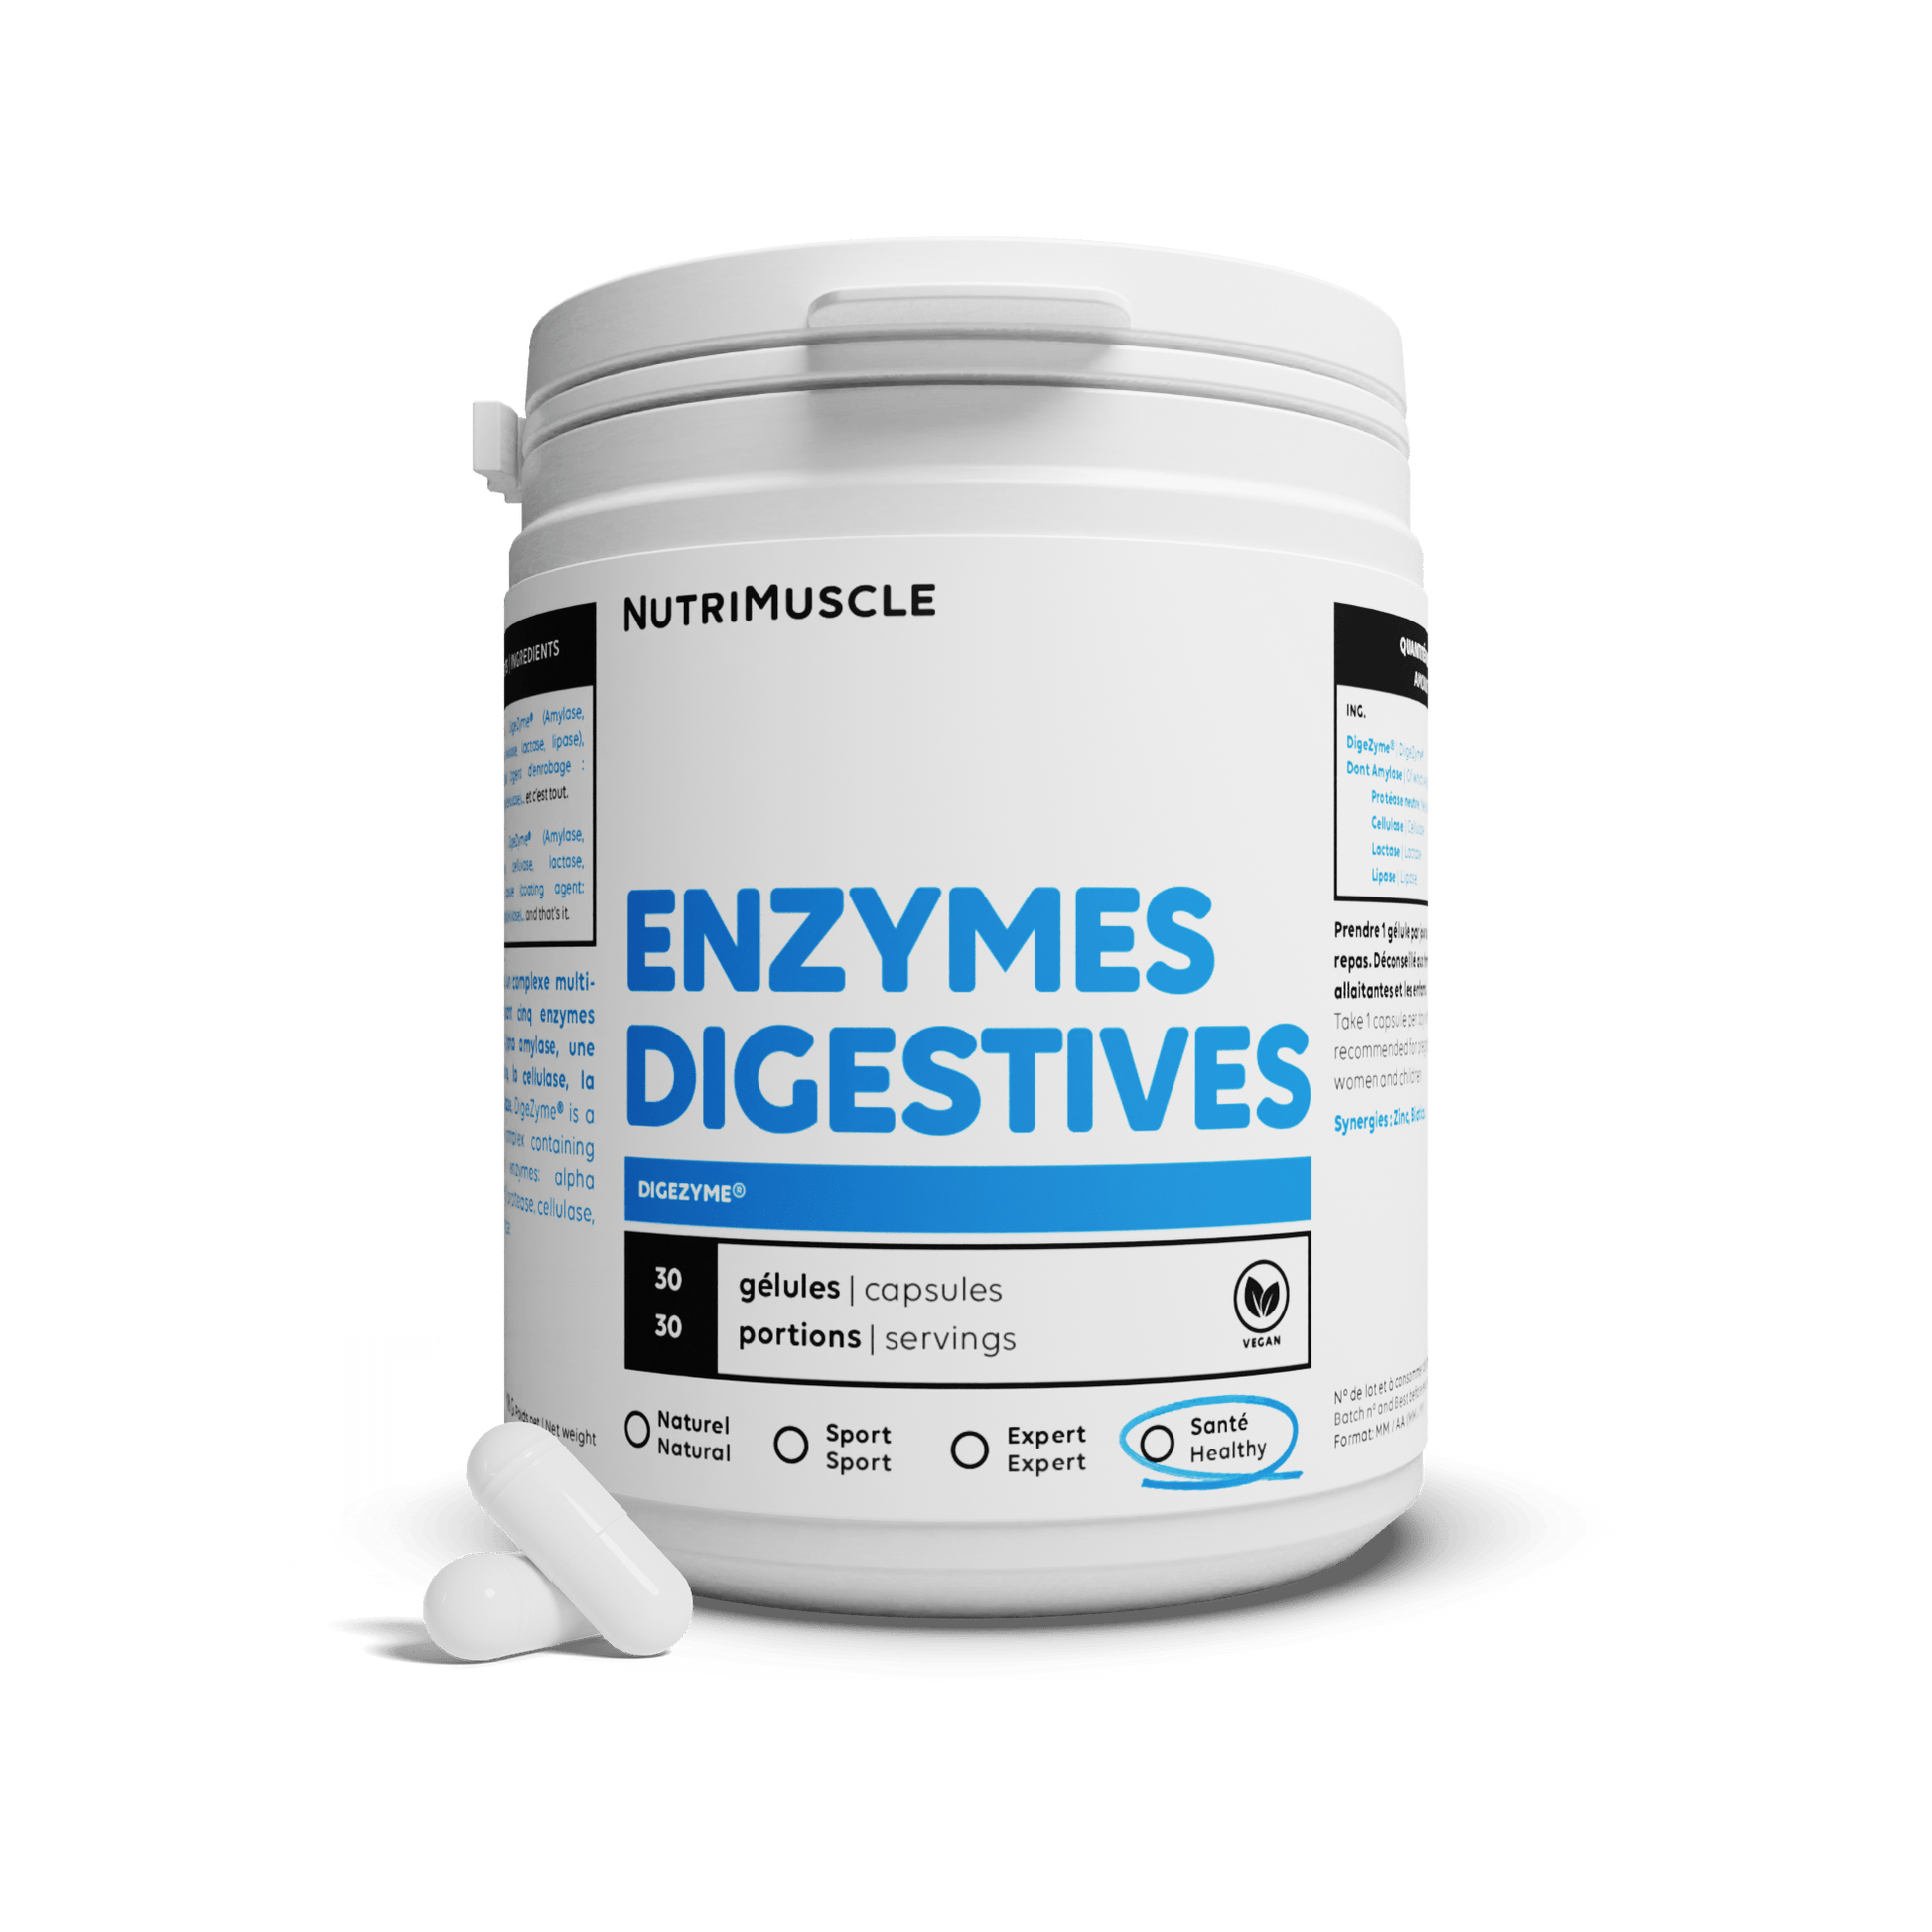 Nutrimuscle Nutriments 30 gélules Enzymes digestives (Digezyme®)